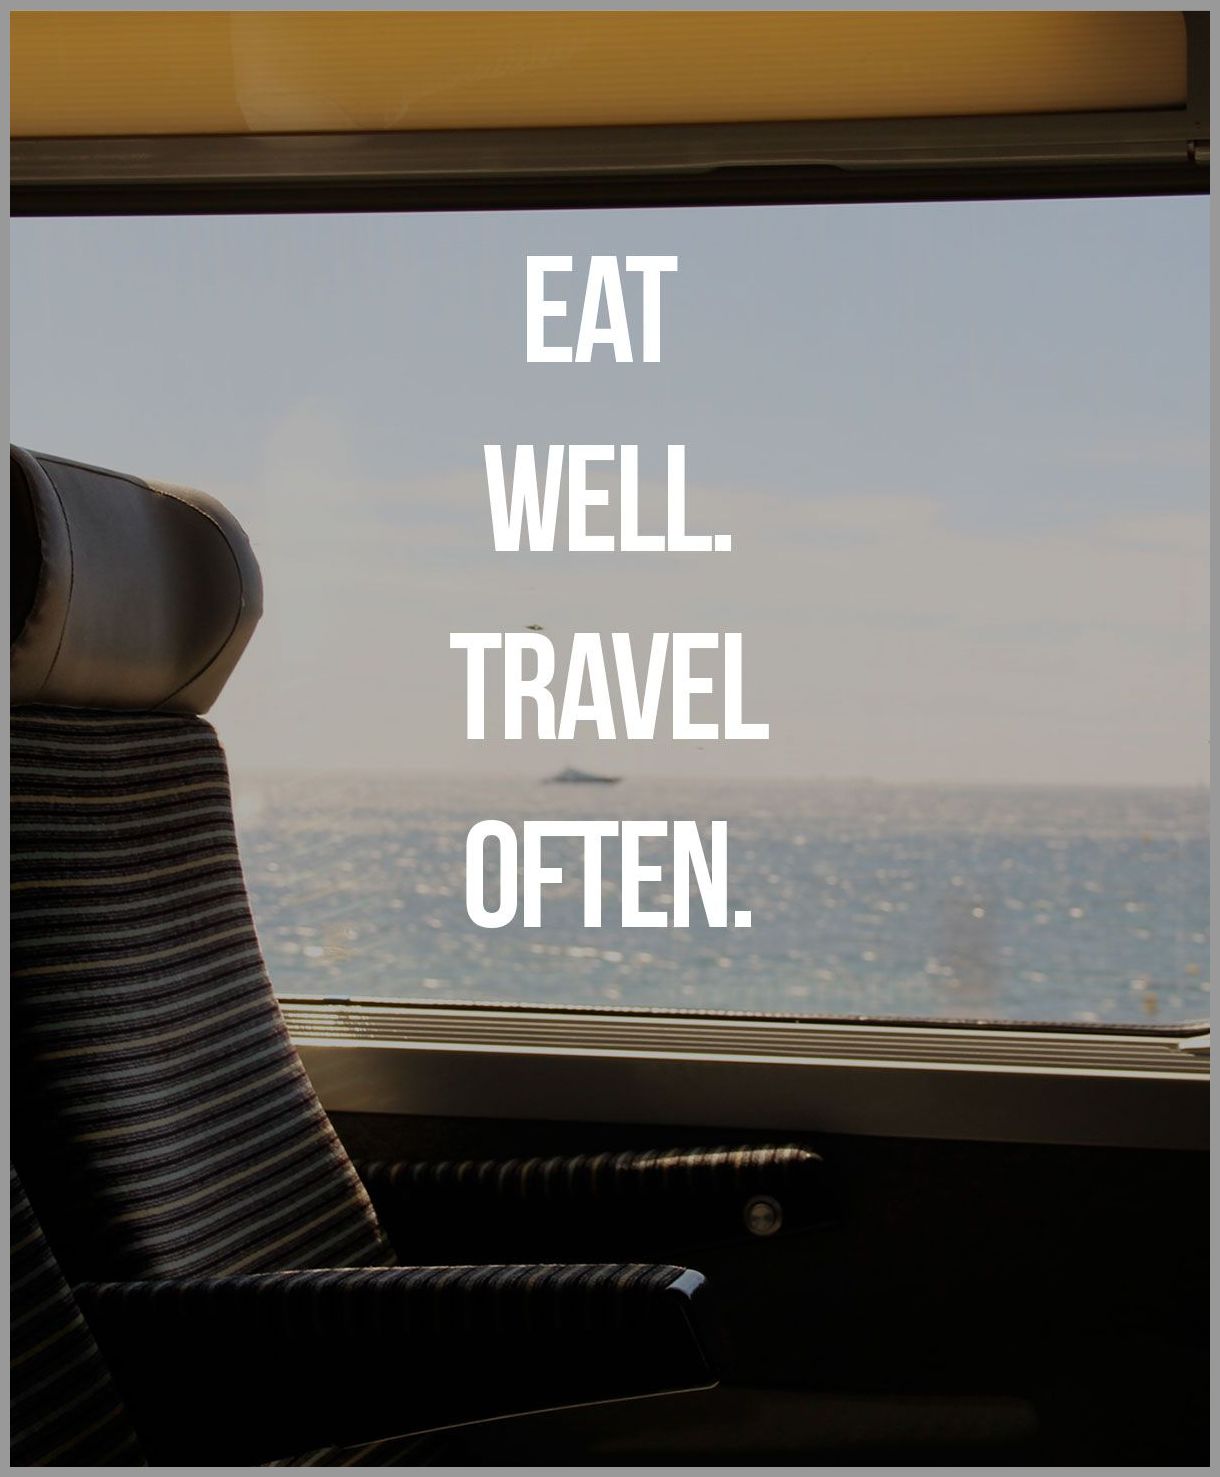 Eat well travel often - Eat well travel often